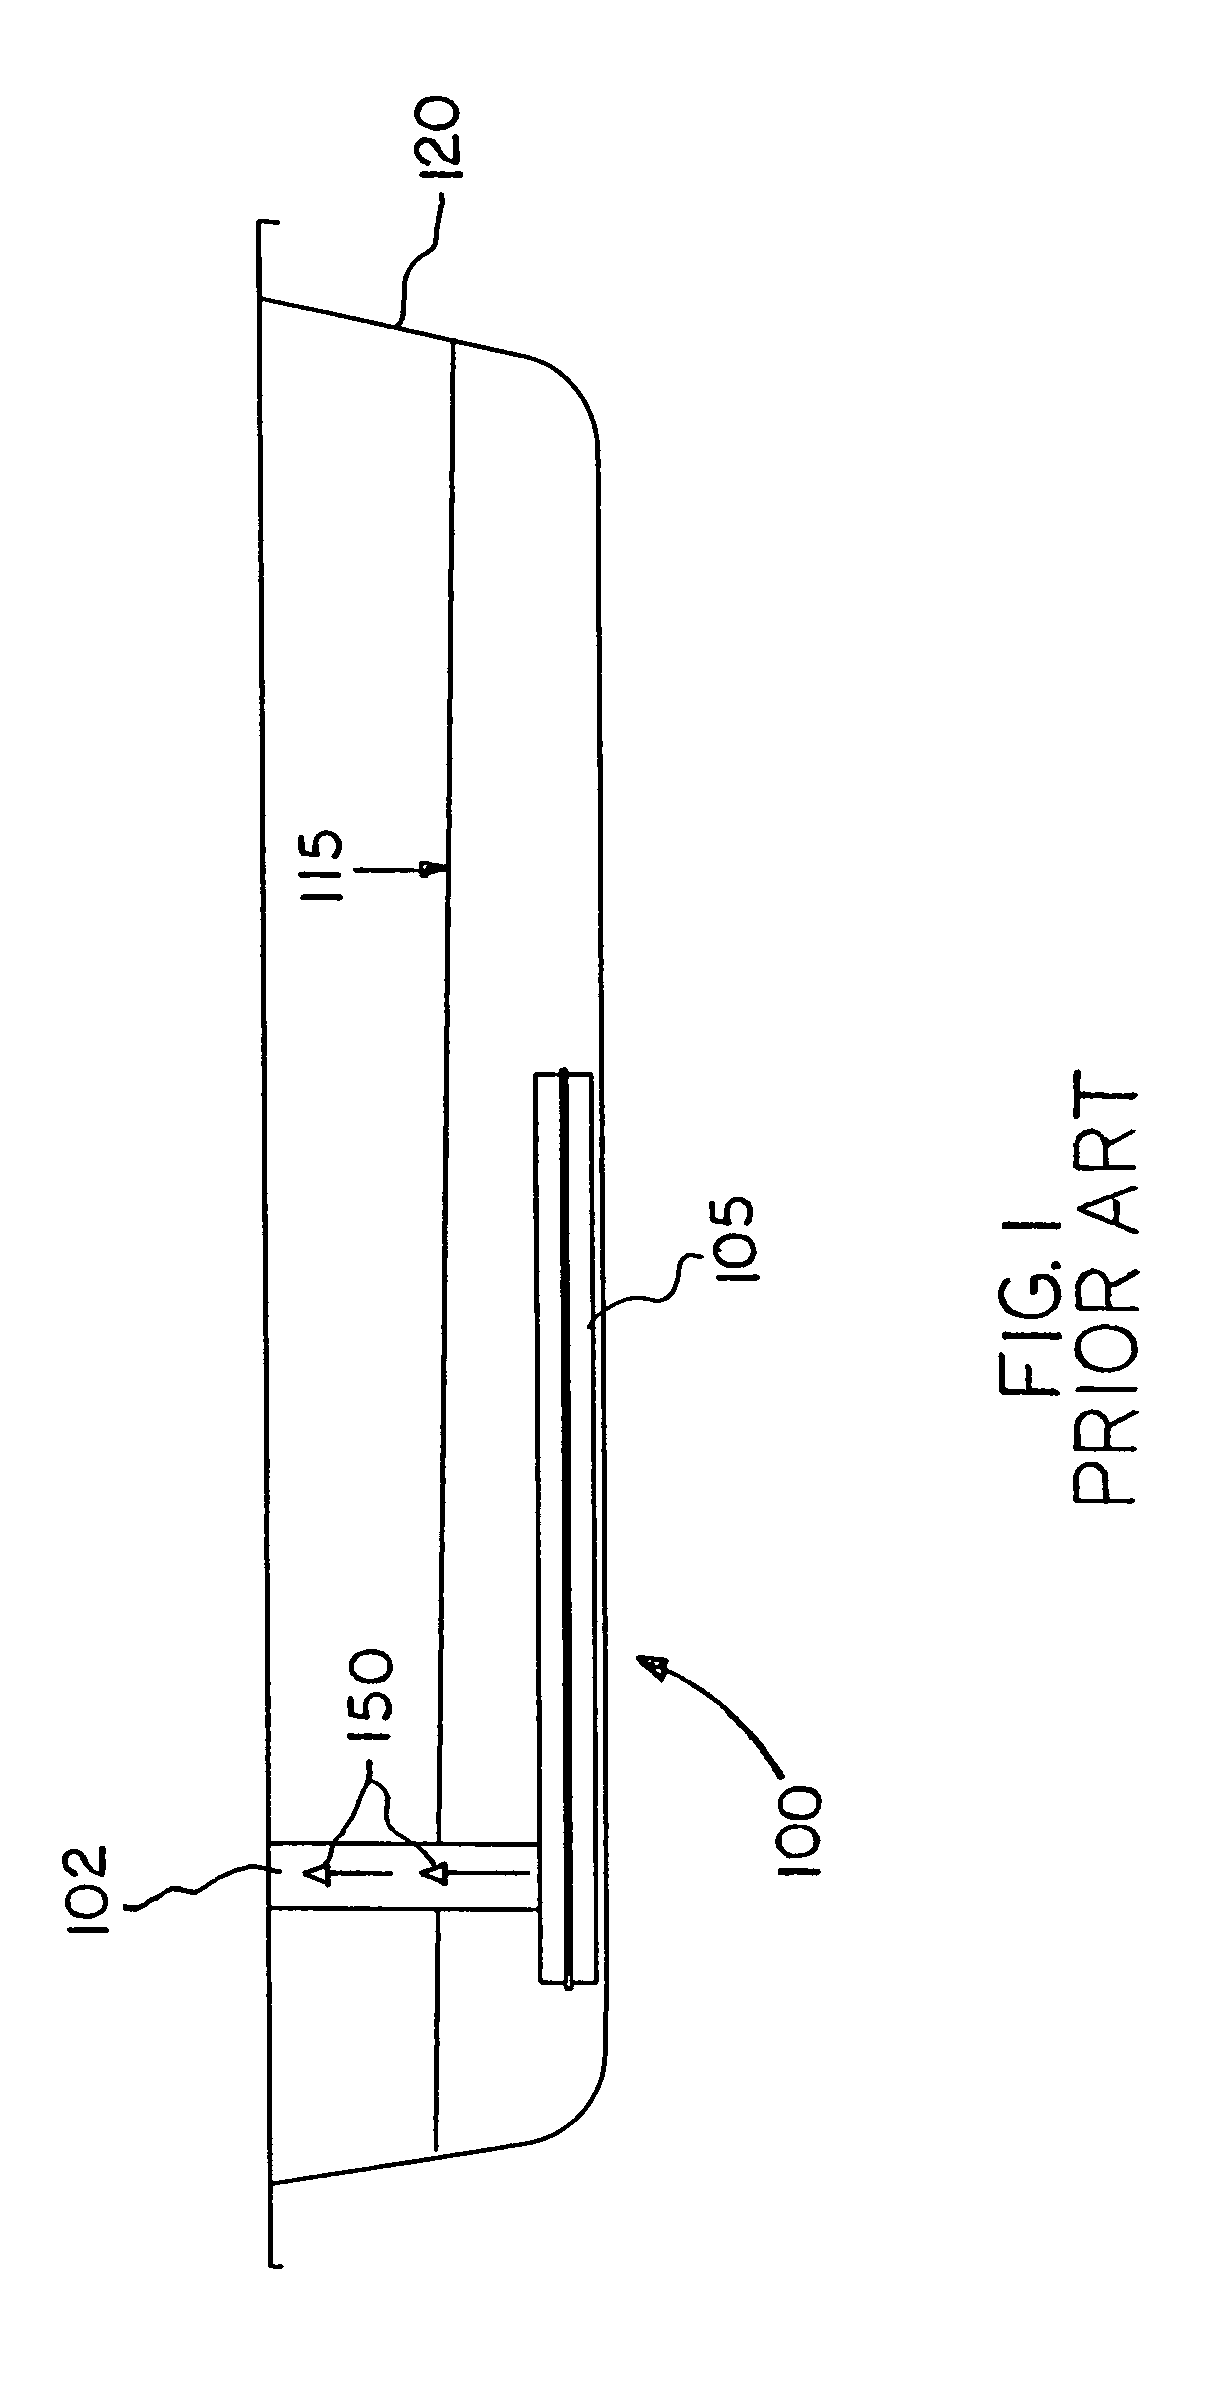 Internal bypass filtration circuit